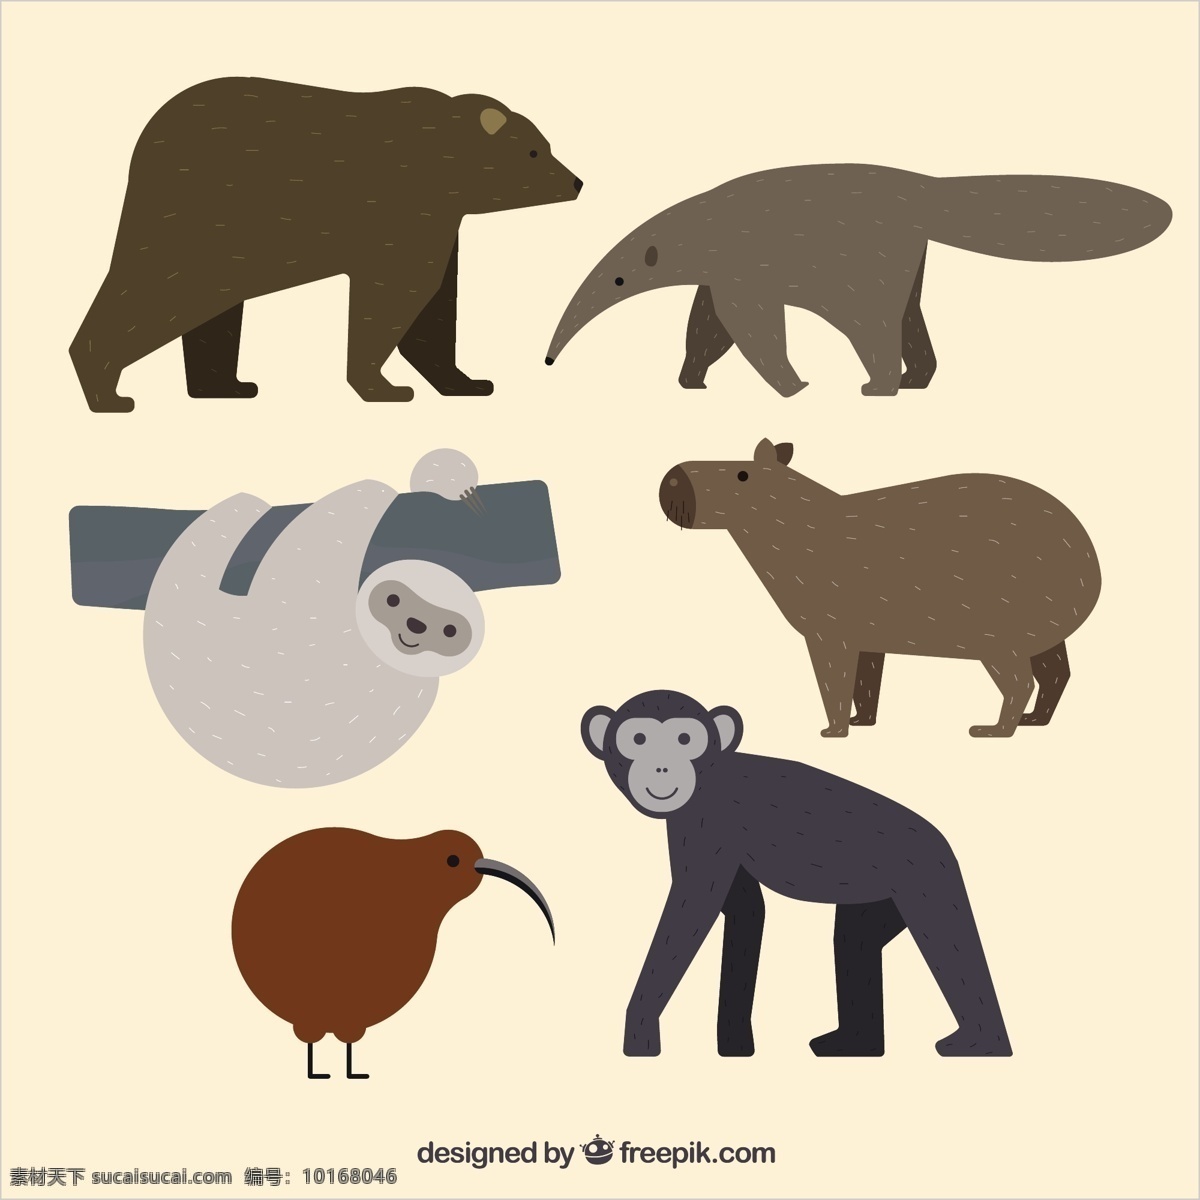 手绘森林动物 一方面 自然 动物 手绘 平坦 森林 猴子 可爱的熊 平面设计 可爱的动物 画 猕猴桃 懒惰 食蚁兽 白色